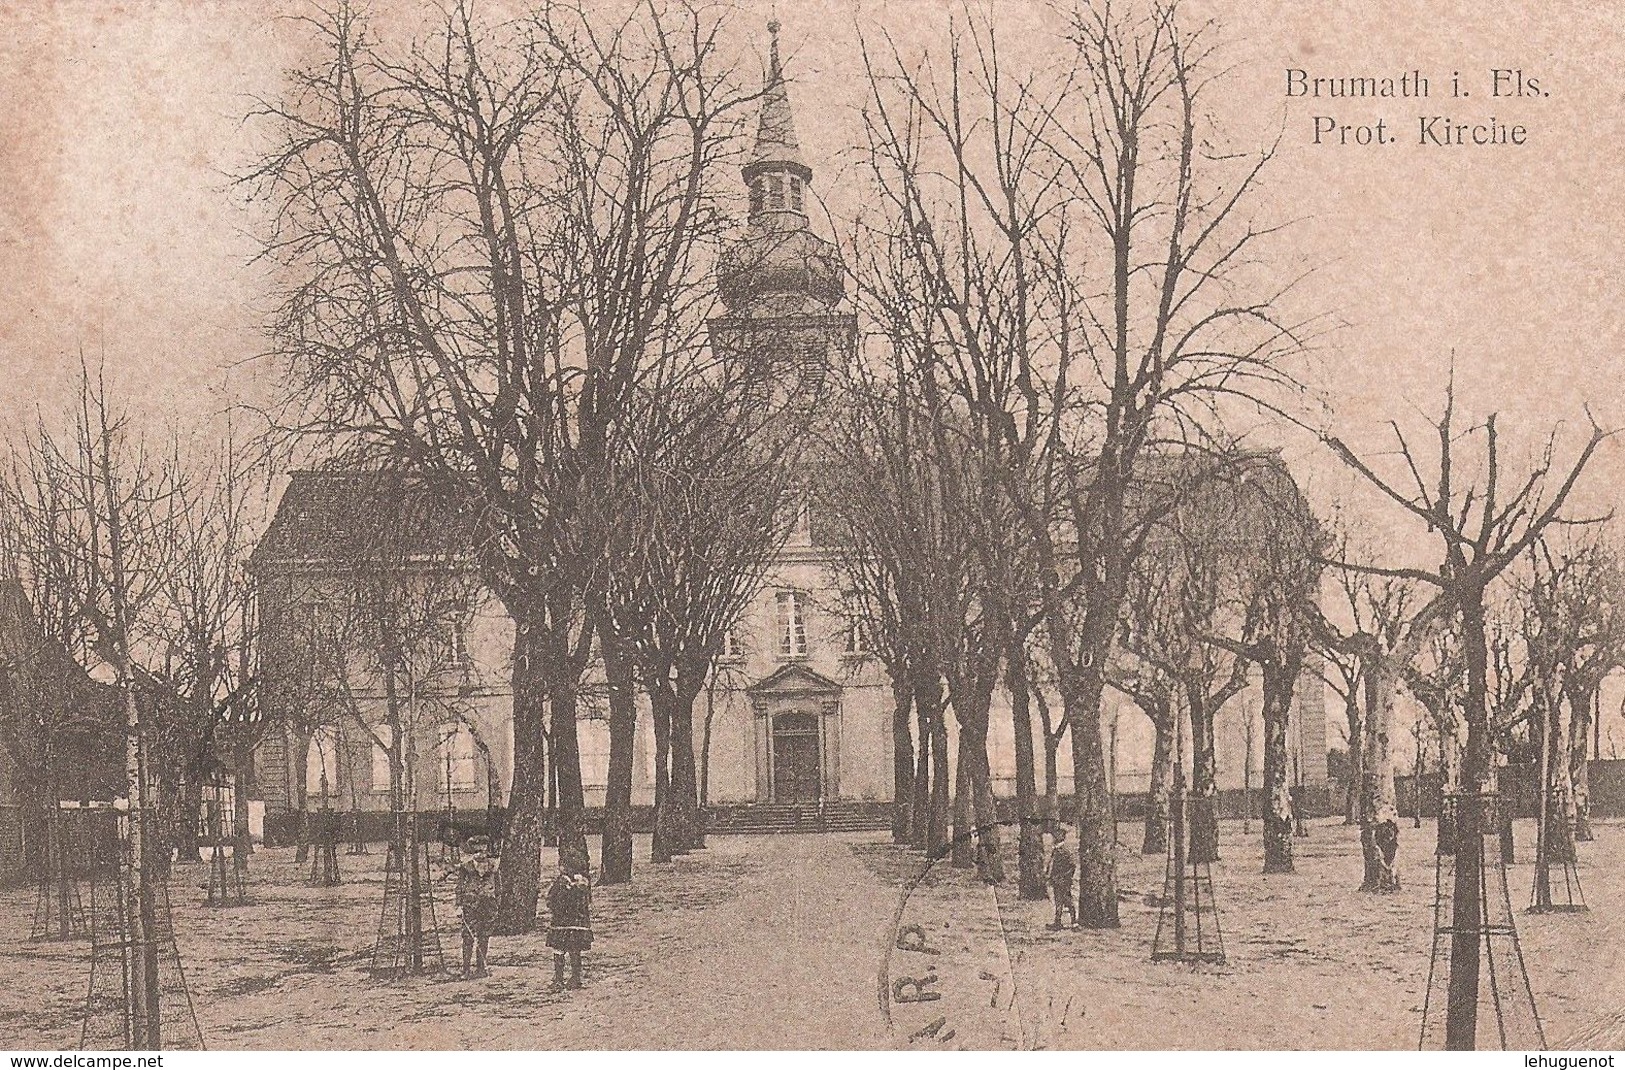 BRUMATH  - Eglise Protestante Luthérienne ( Prot. Kirche) - Temple Protestant - Place Du Château - Brumath